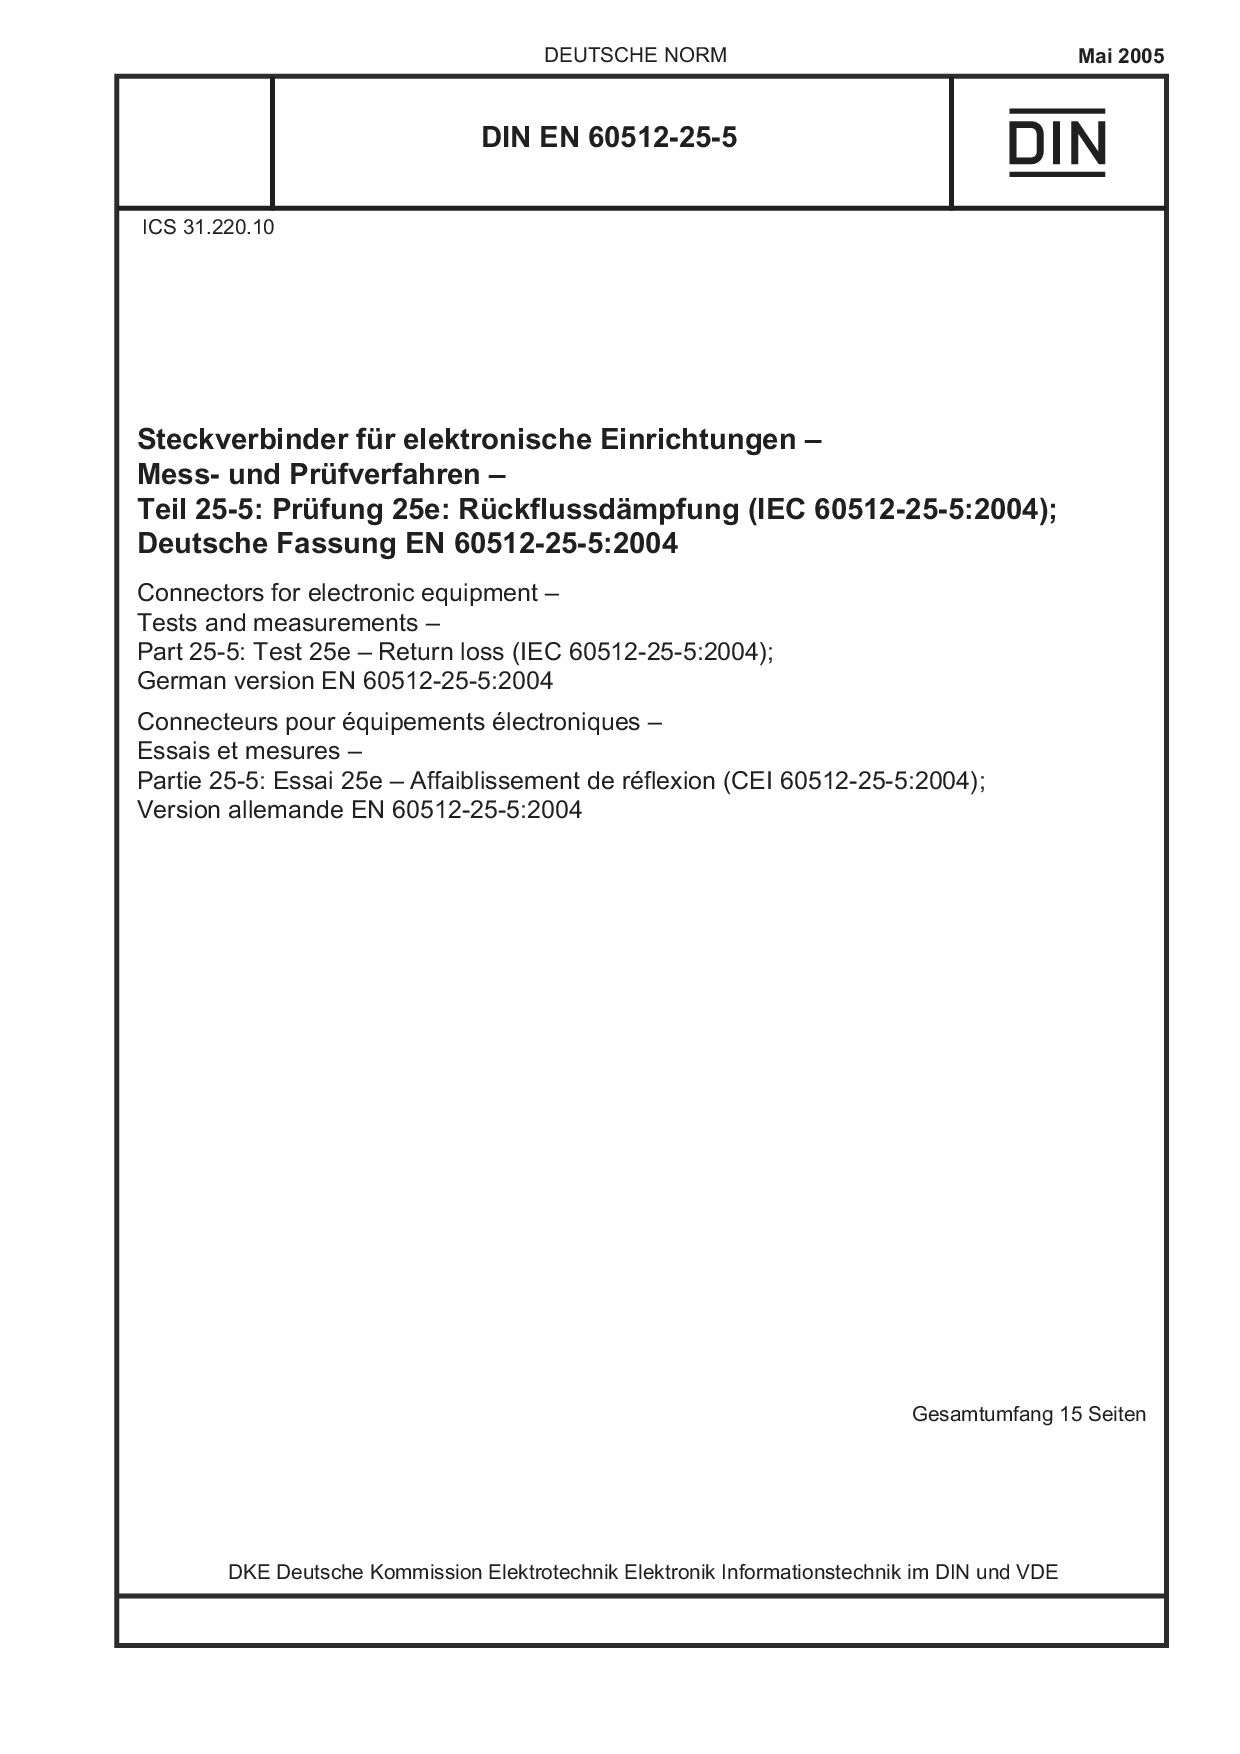 DIN EN 60512-25-5:2005封面图